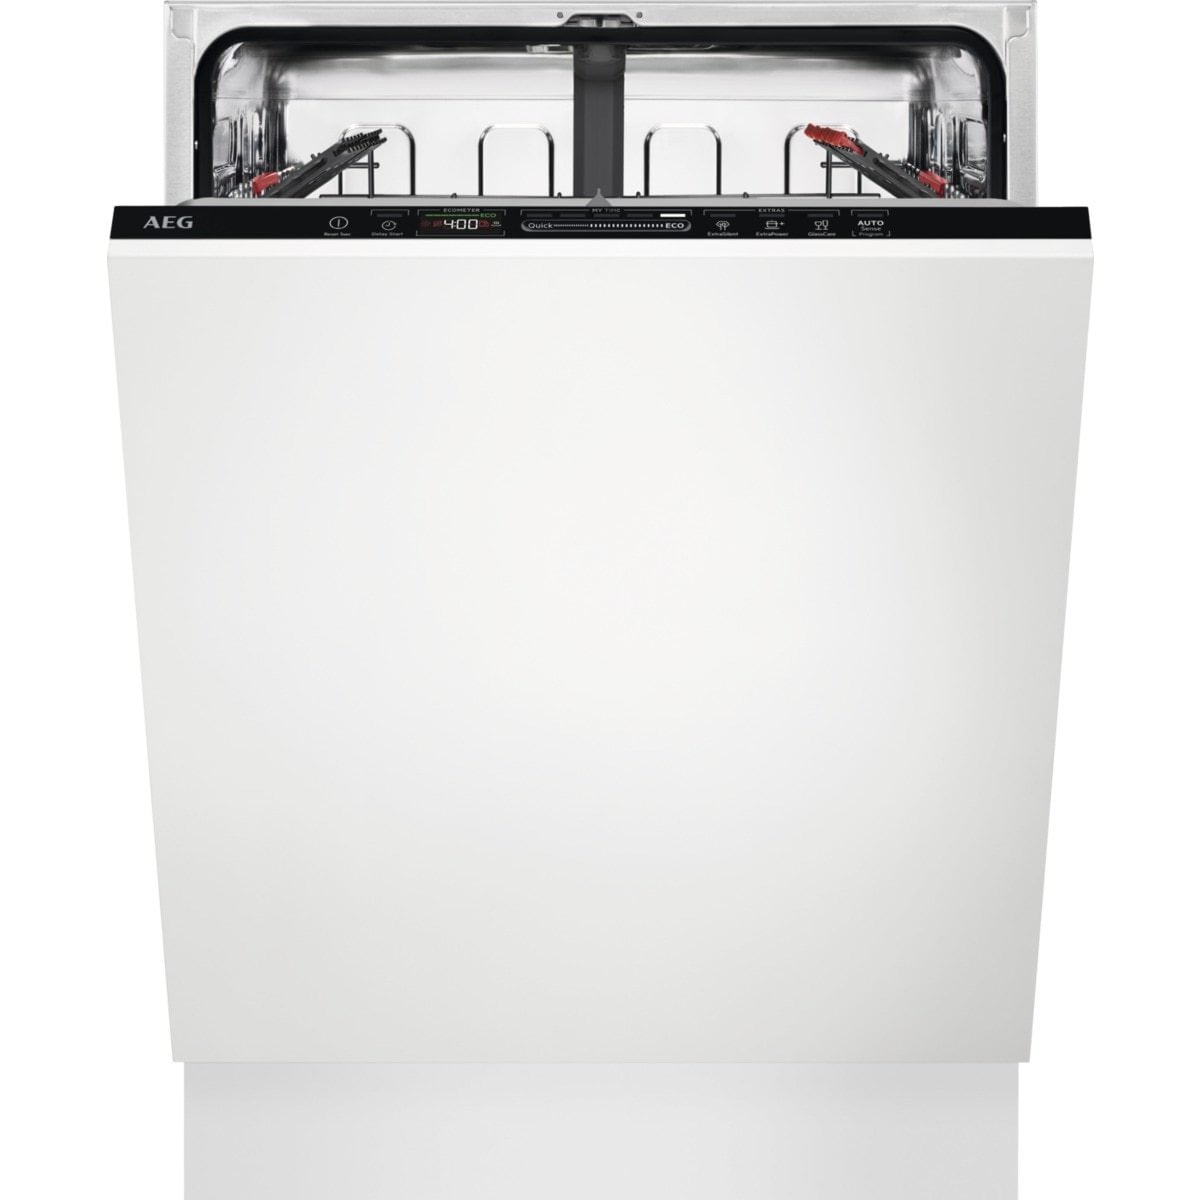 Køb Sort Opvaskemaskine online til meget lav pris!